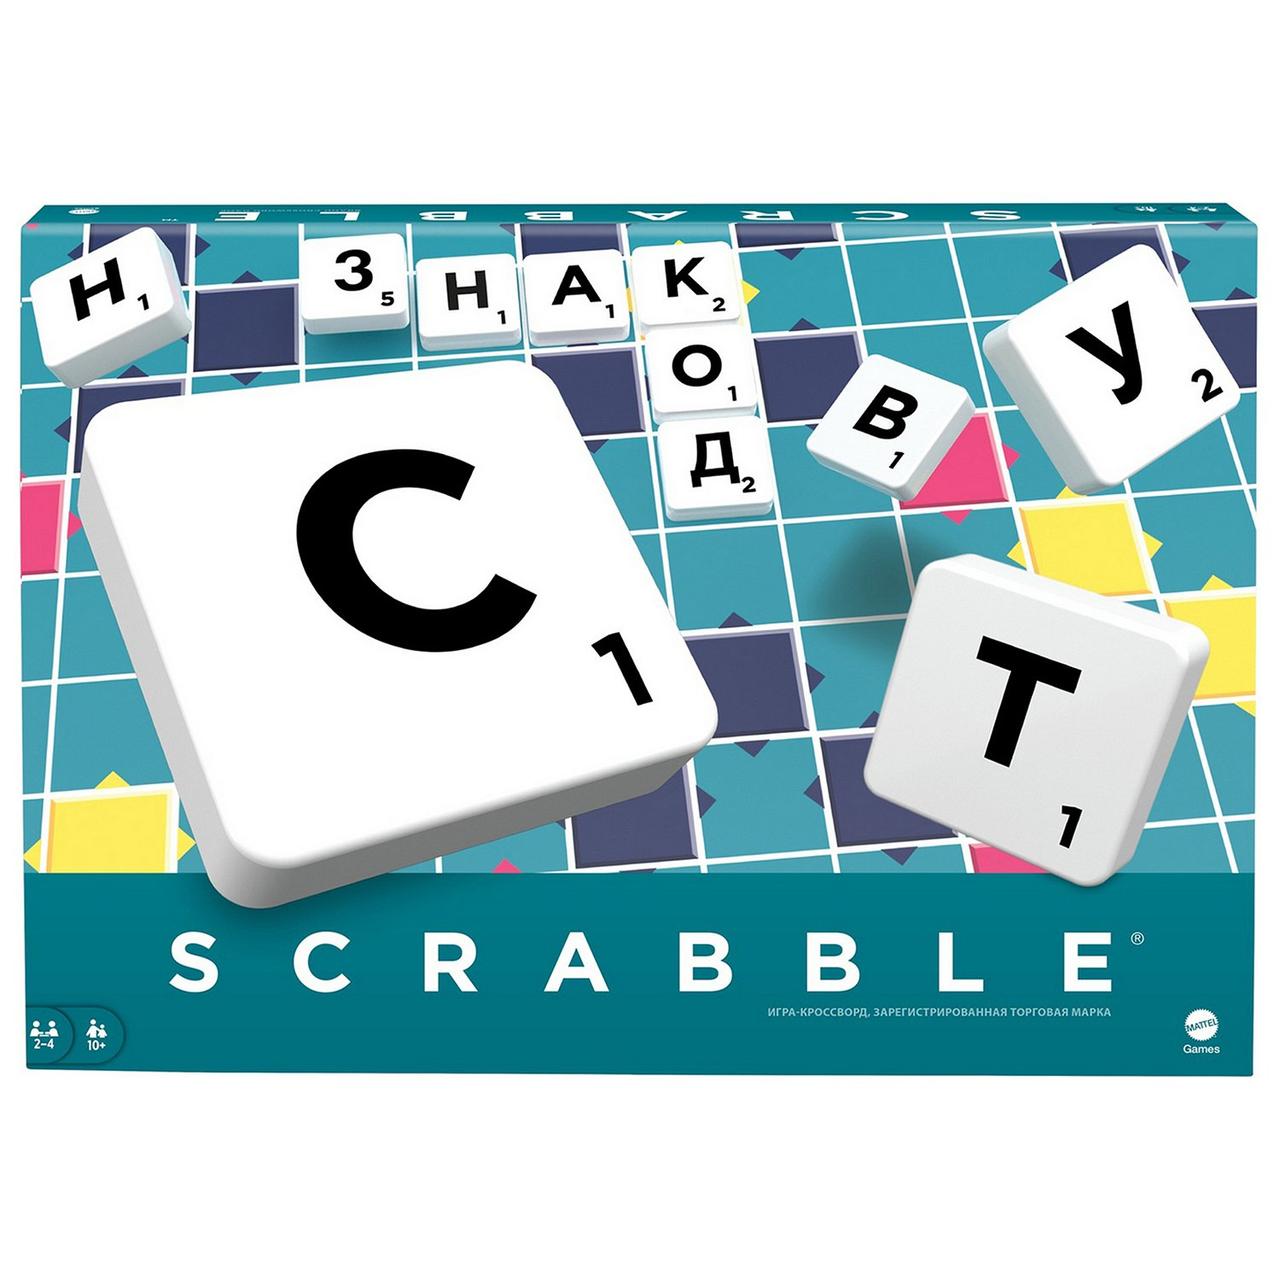 Настольная ИГРА "СКРЭББЛ" Scrabble Y9618 классический Mattel Games